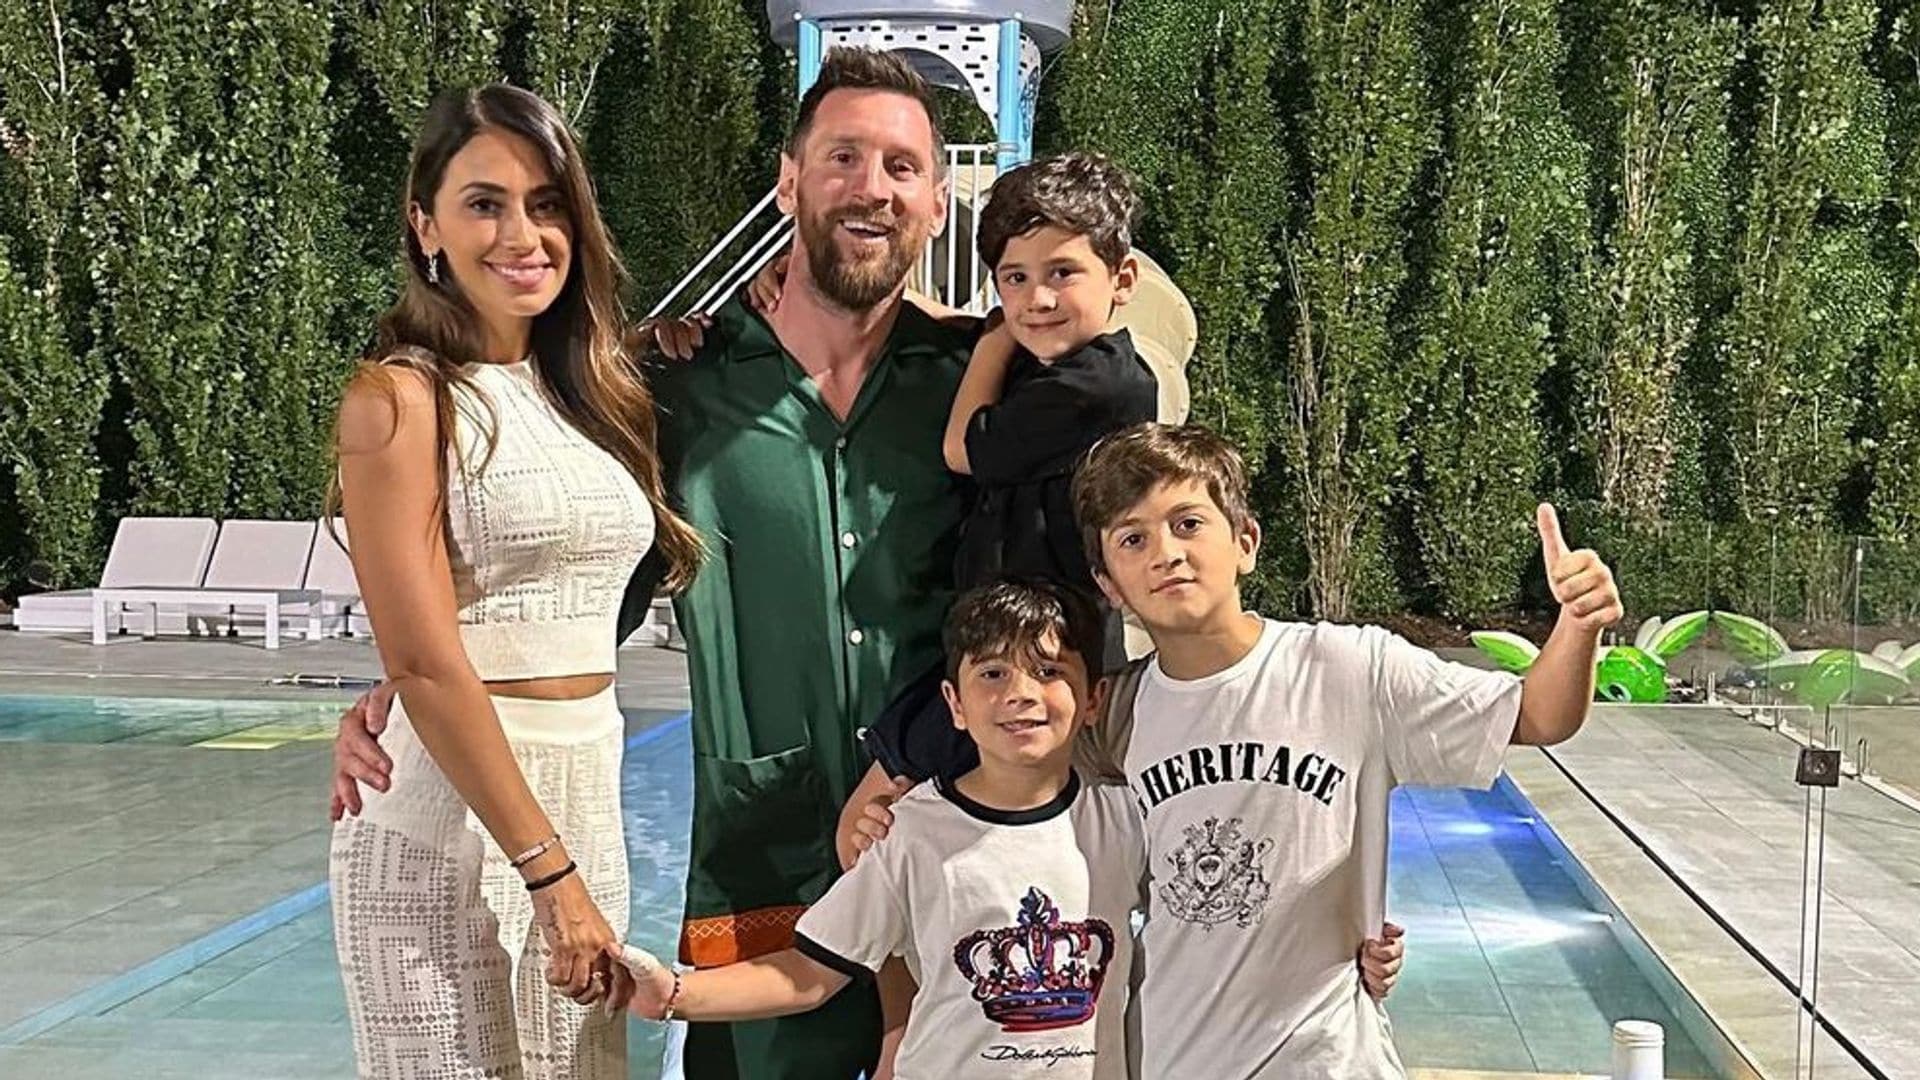 Lionel Messi y Antonela Roccuzzo con sus hijos